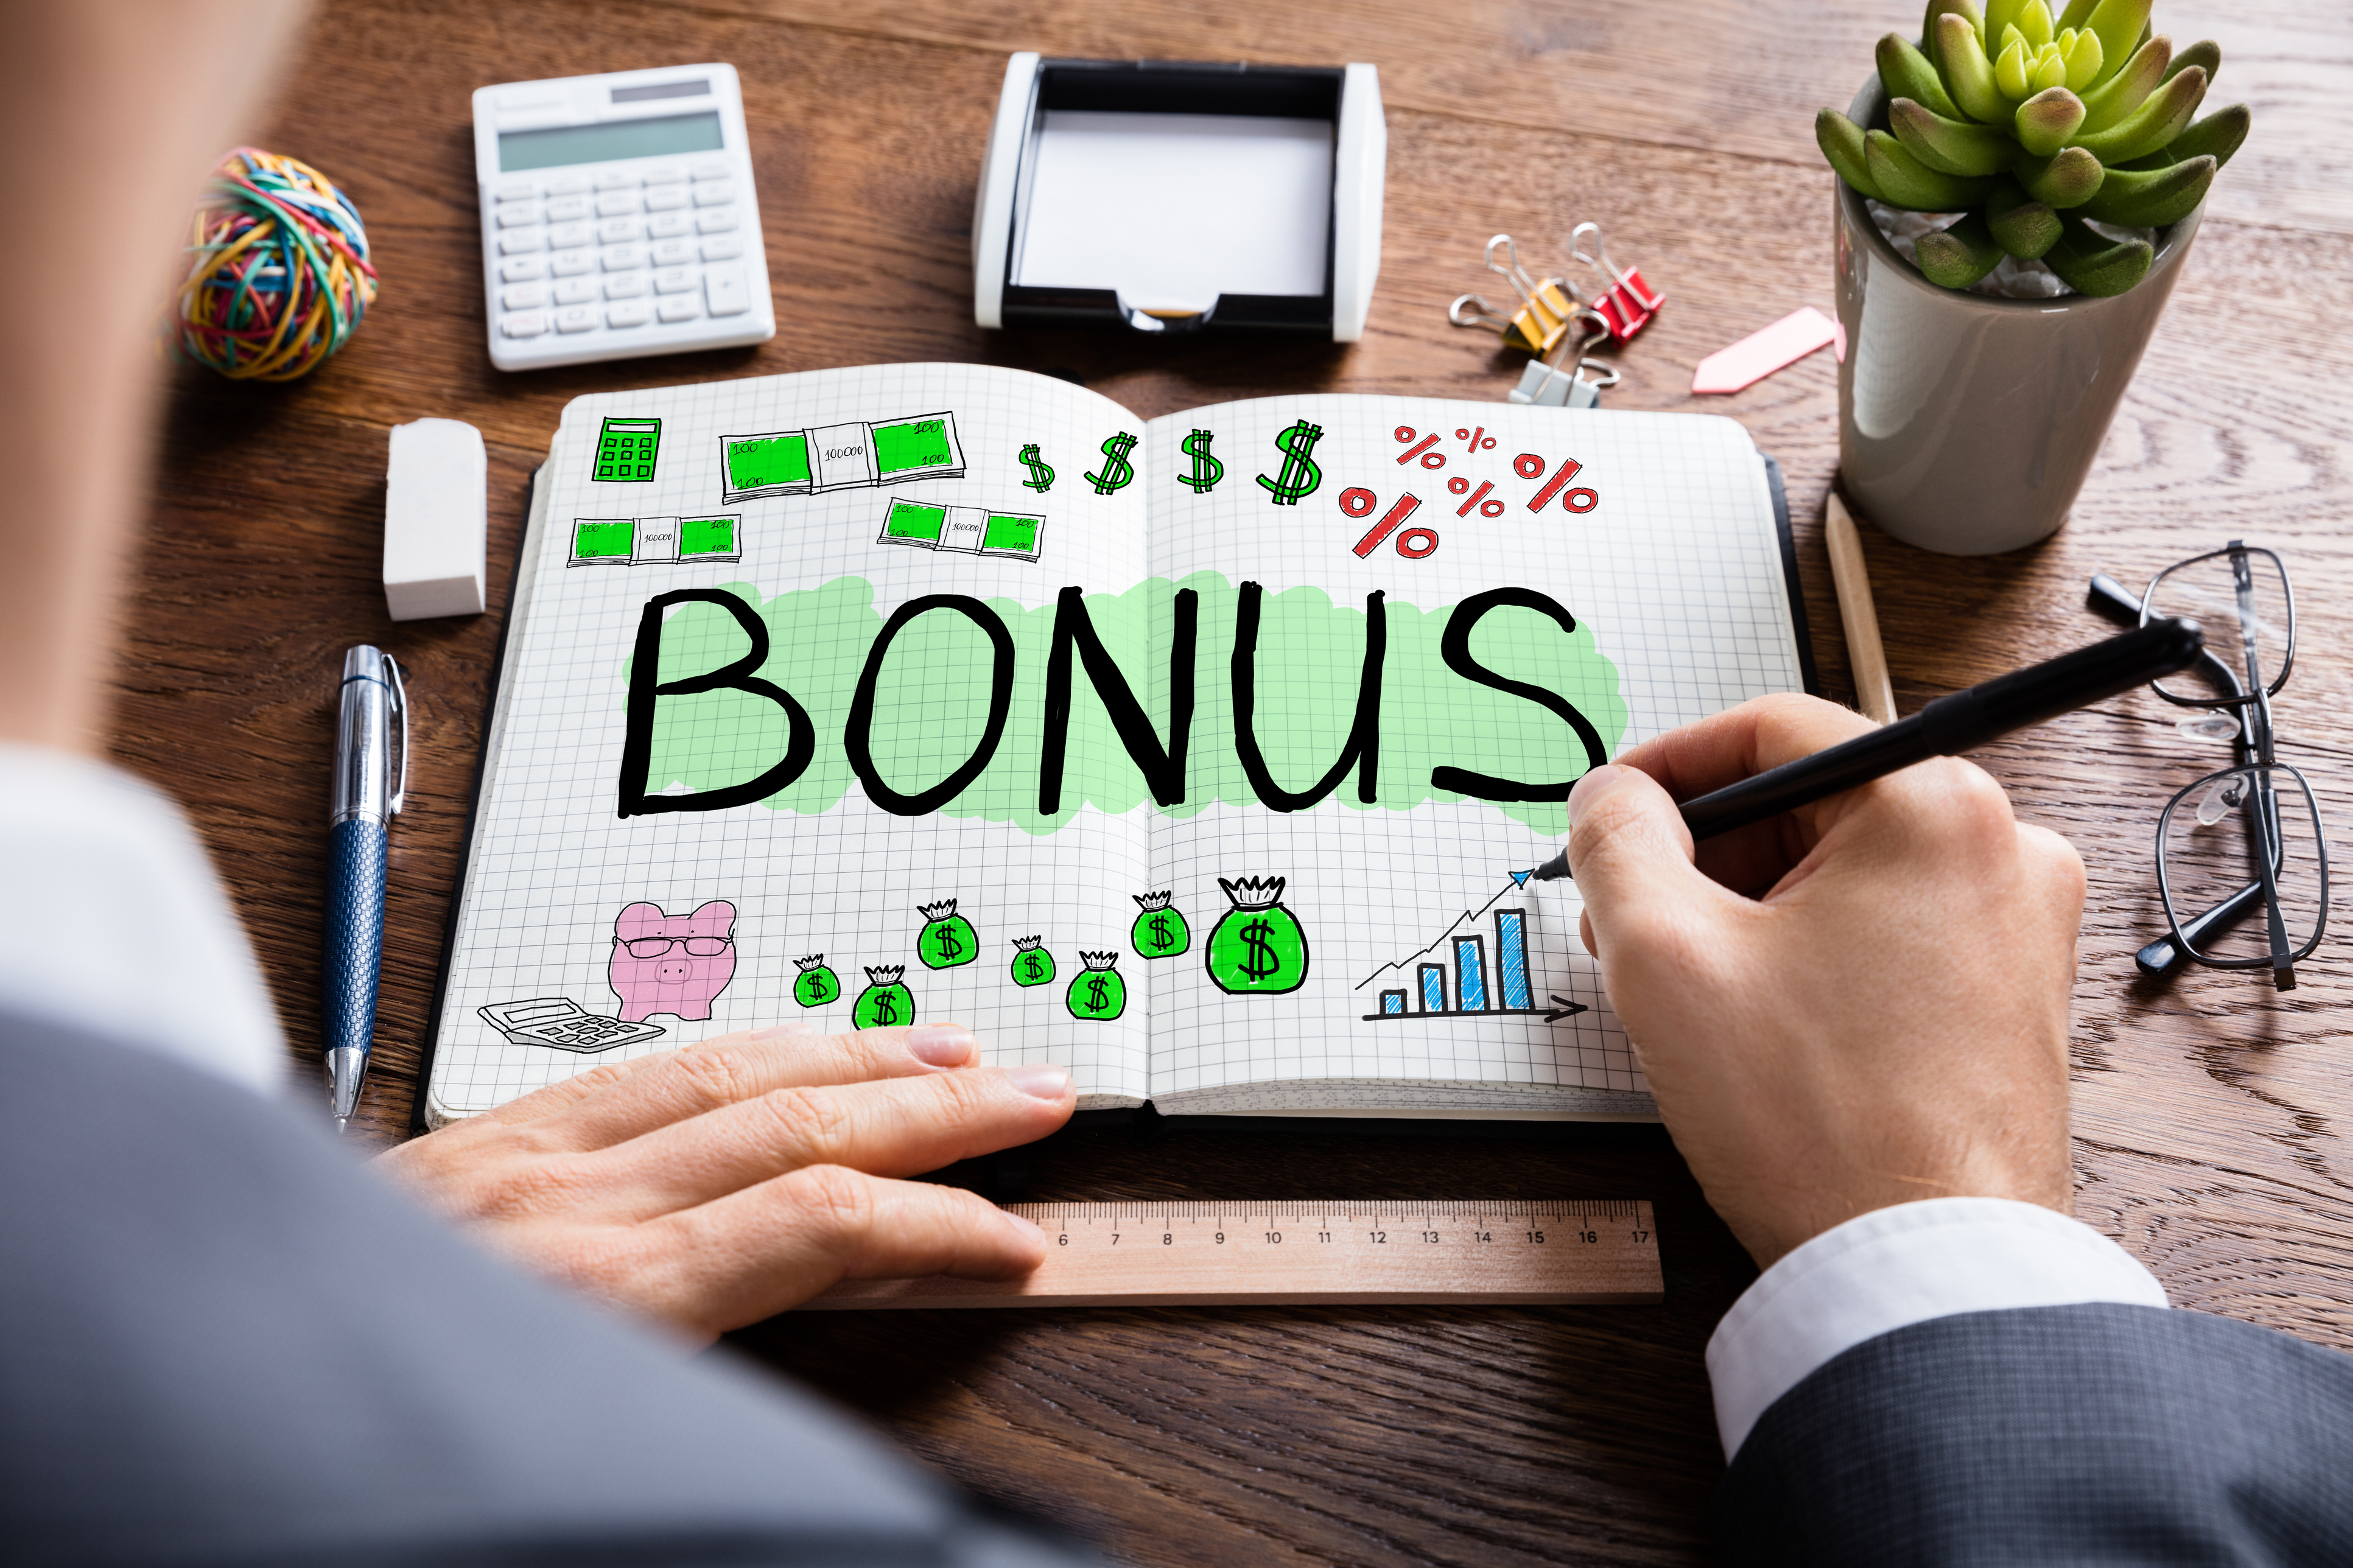 Should You Revise Your Company's Bonus Strategy? Online Rewards